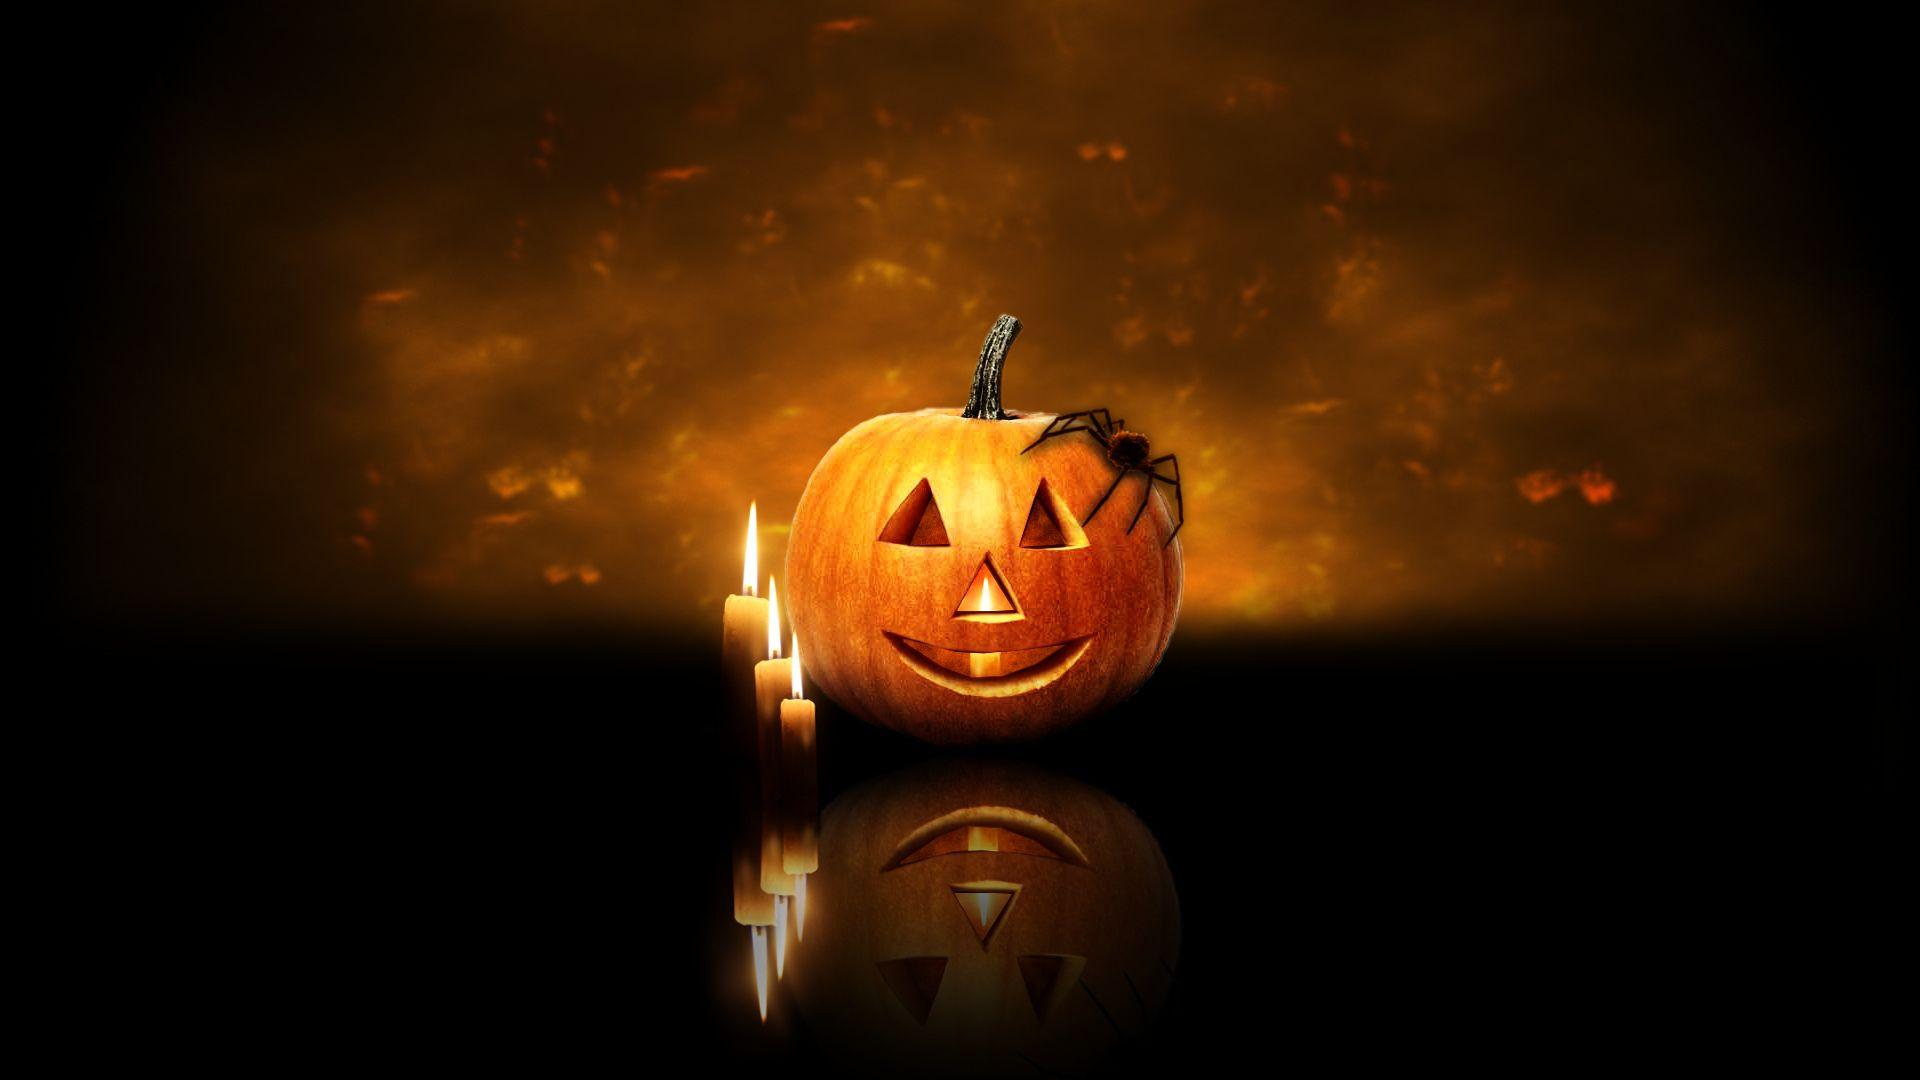 Halloween pumpkin 1920x1080. Seasonal Holidays, Halloween, 4th